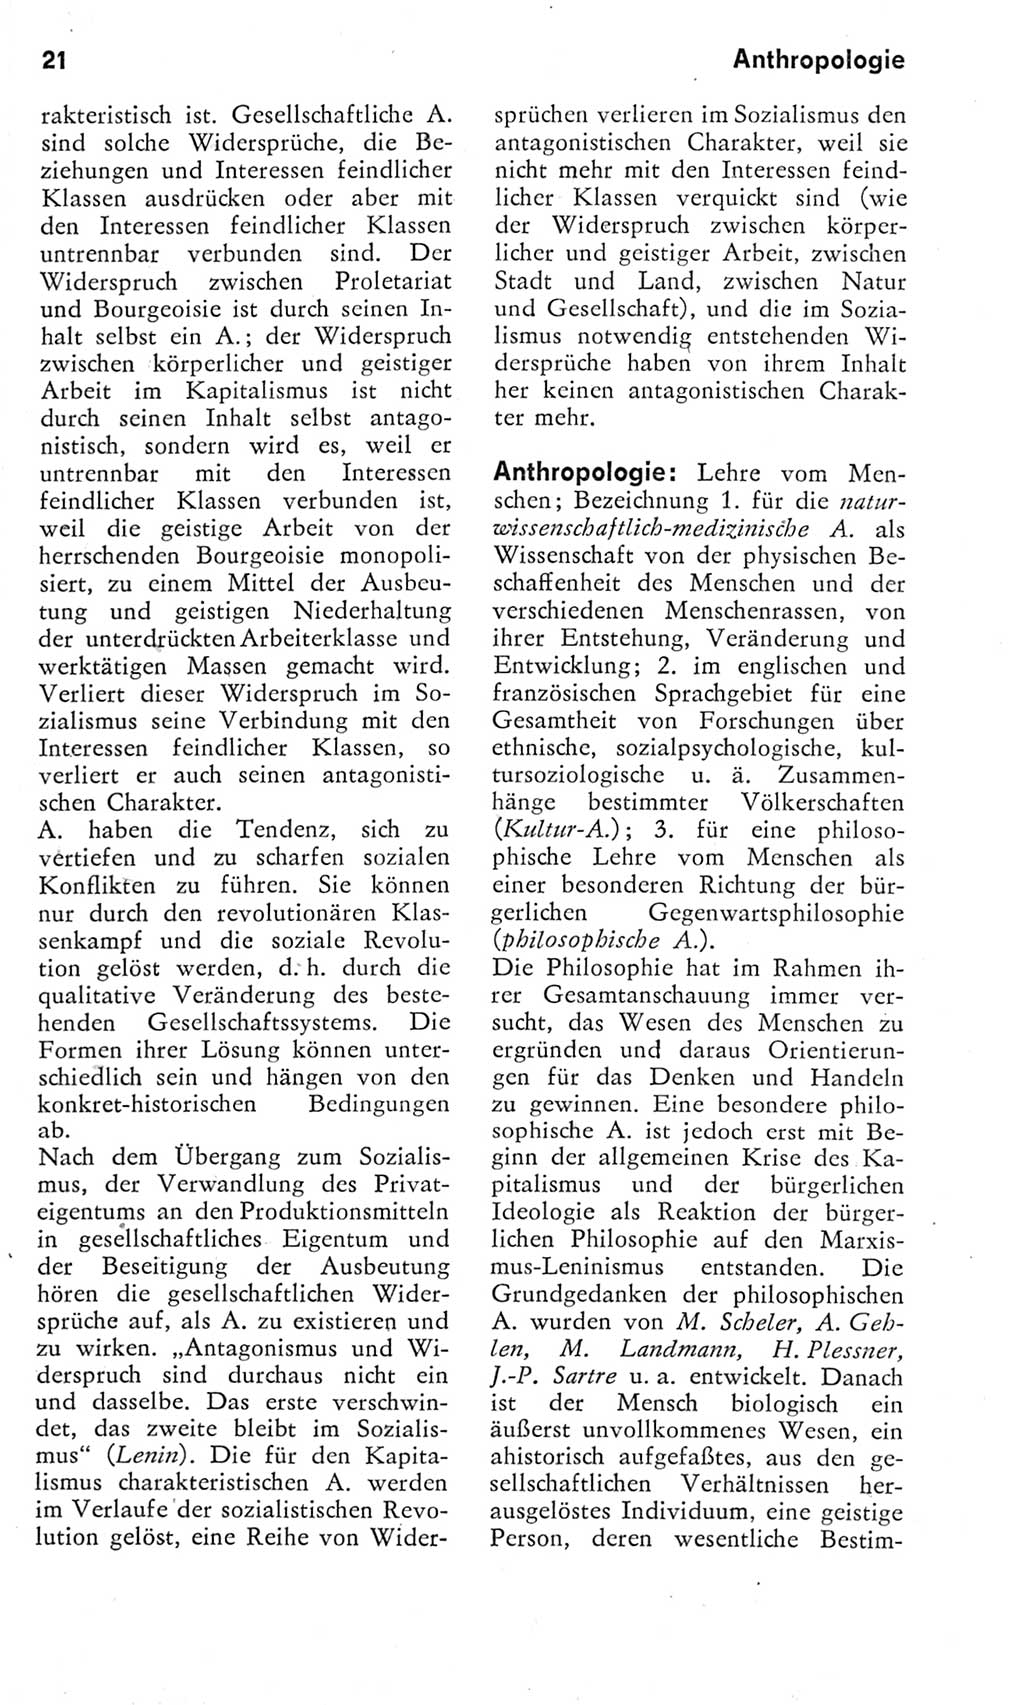 Kleines Wörterbuch der marxistisch-leninistischen Philosophie [Deutsche Demokratische Republik (DDR)] 1975, Seite 21 (Kl. Wb. ML Phil. DDR 1975, S. 21)